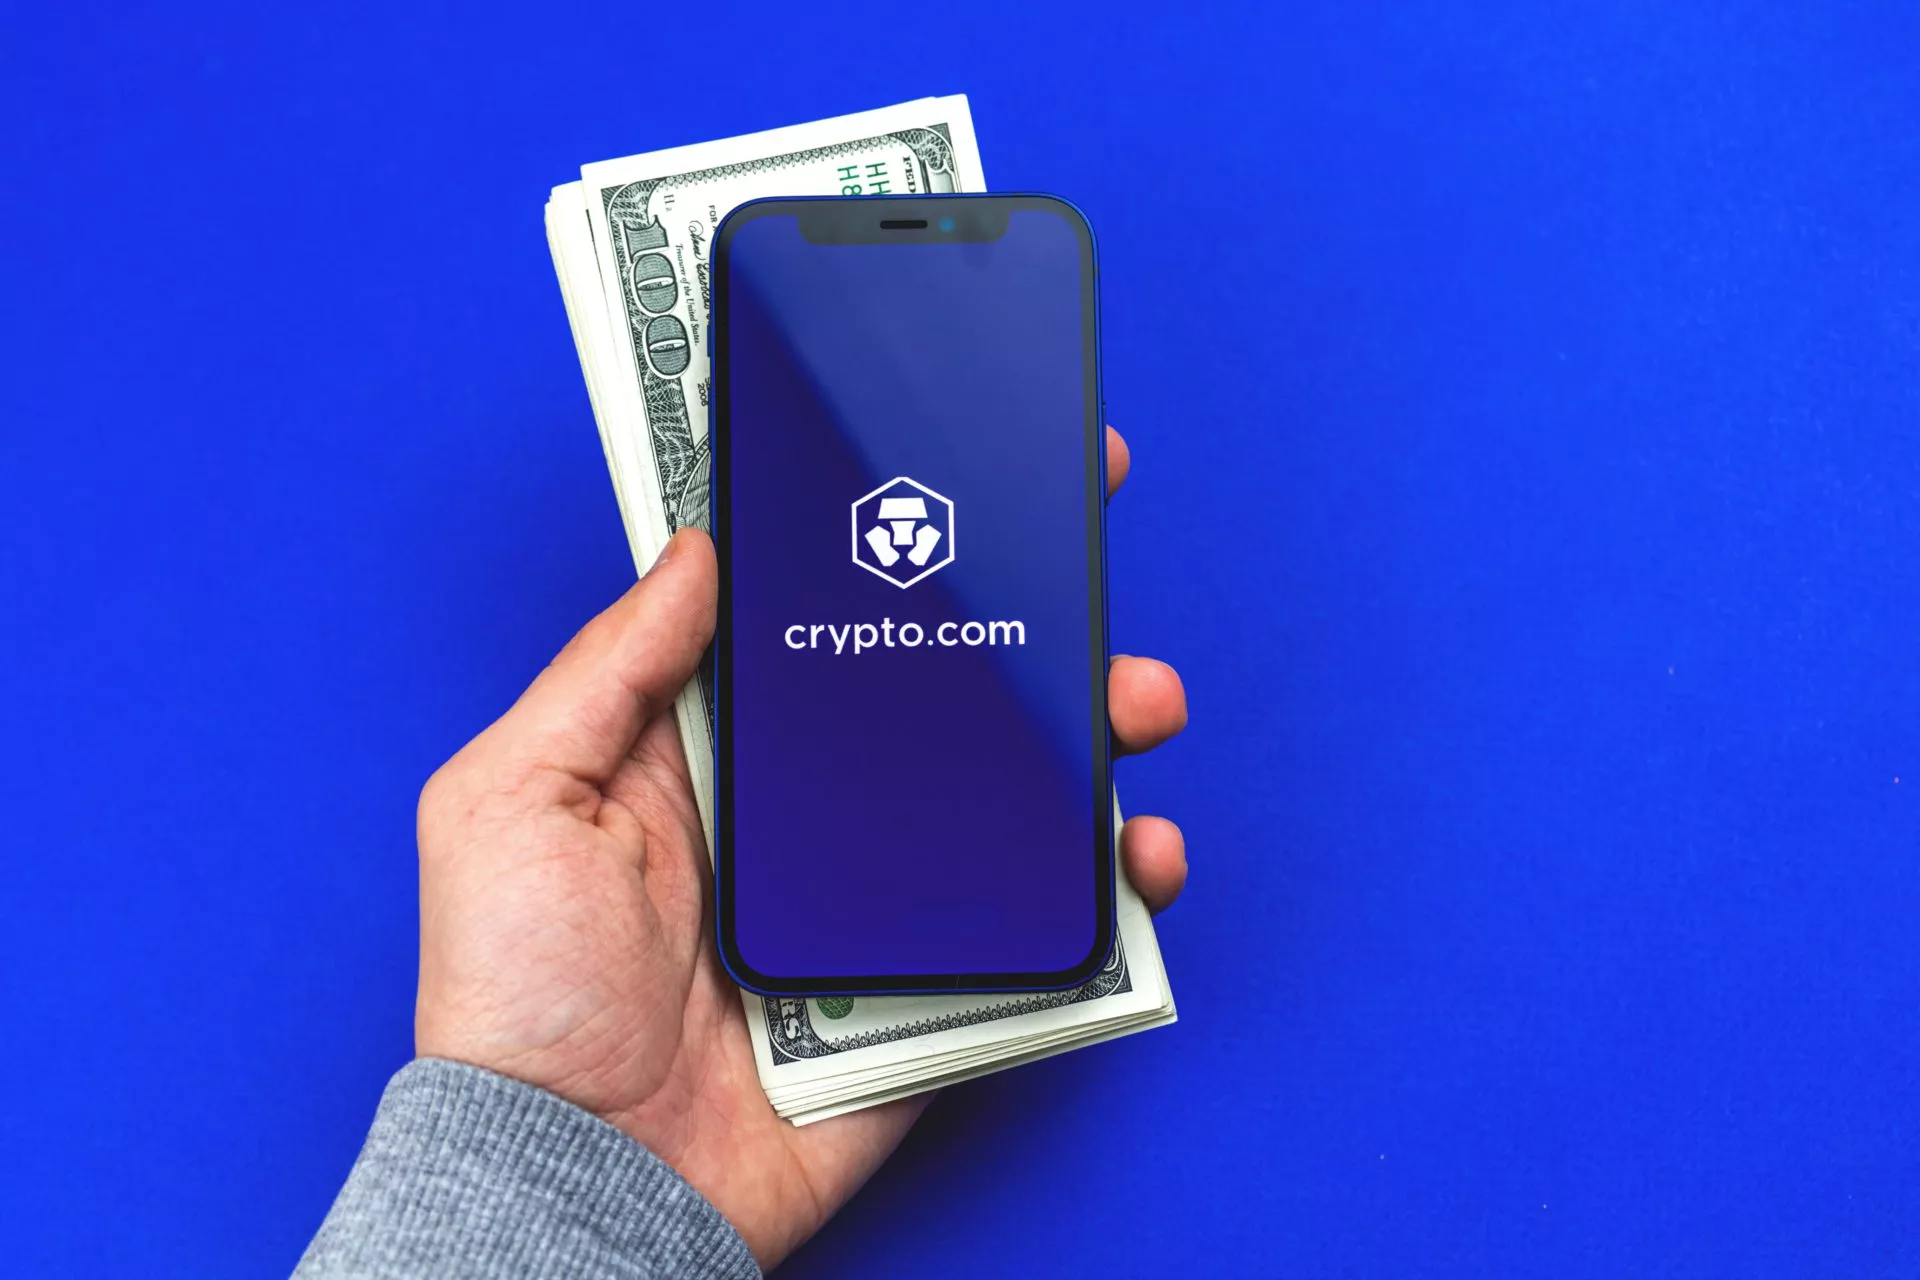 Crypto.com voegt Google Pay toe als betalingsoptie